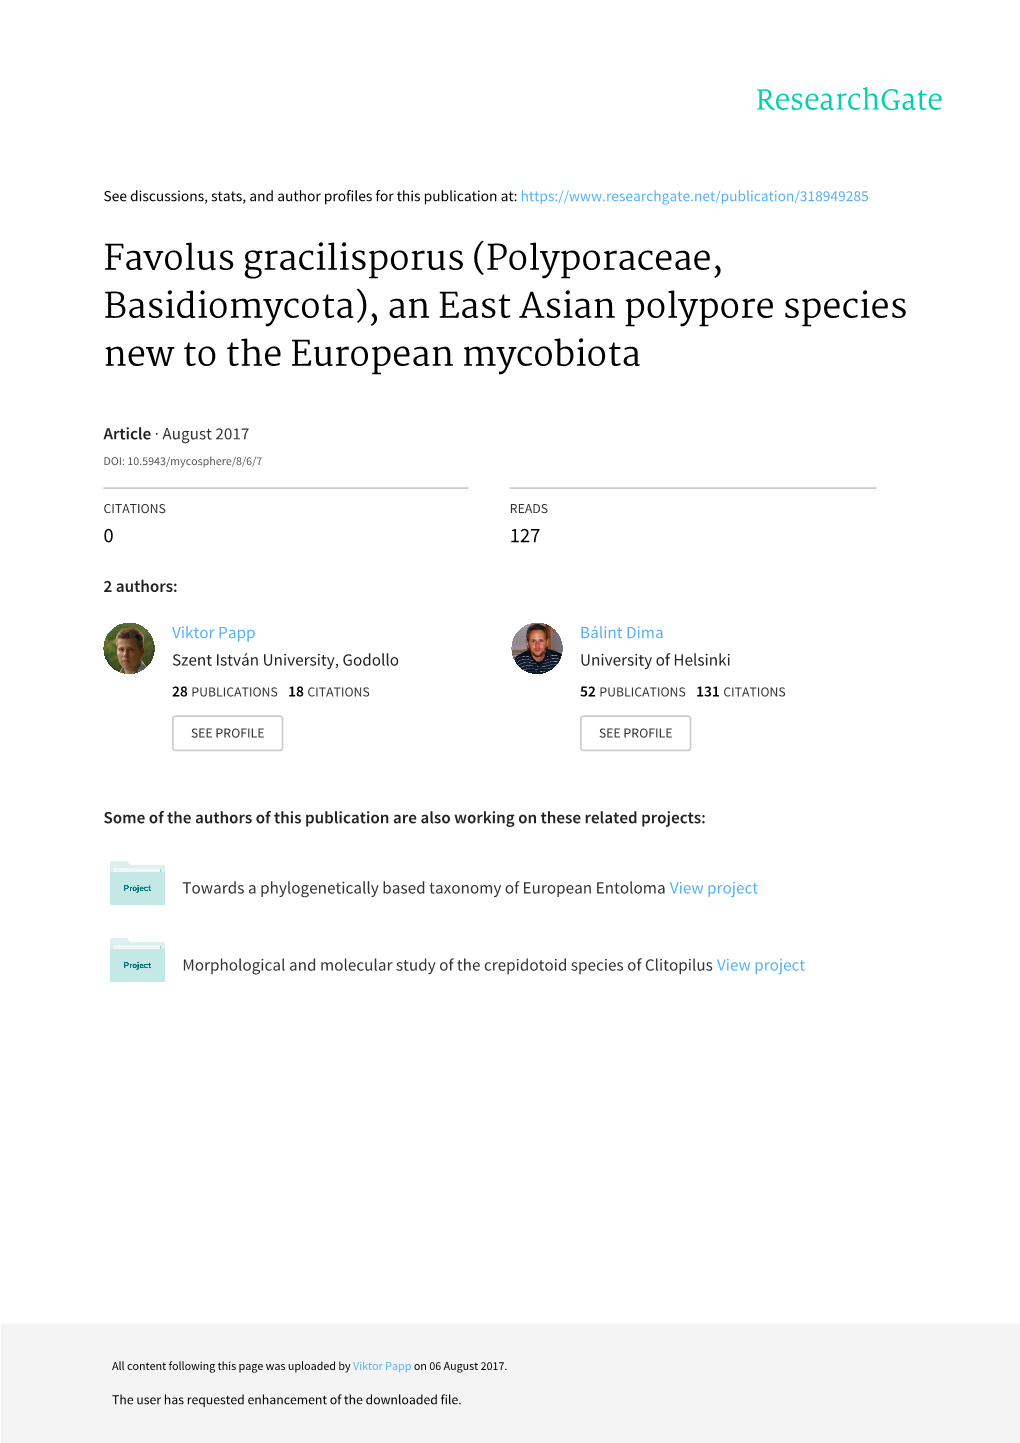 Favolus Gracilisporus (Polyporaceae, Basidiomycota), an East Asian Polypore Species New to the European Mycobiota